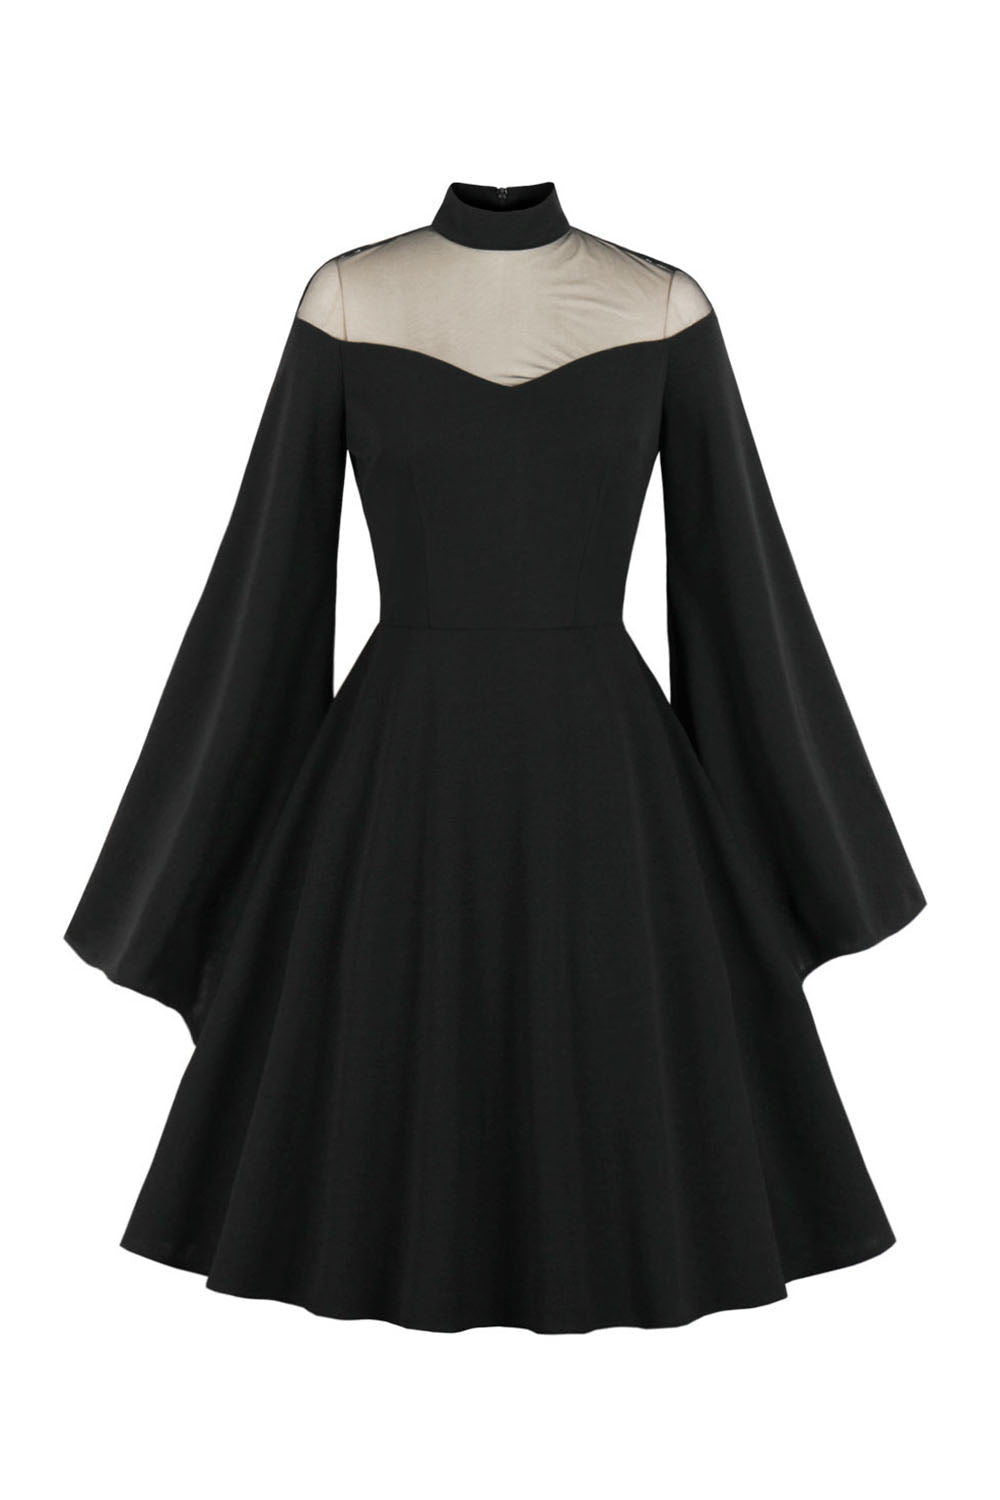 Vintage Czarna sukienka halloweenowa z długim rękawem